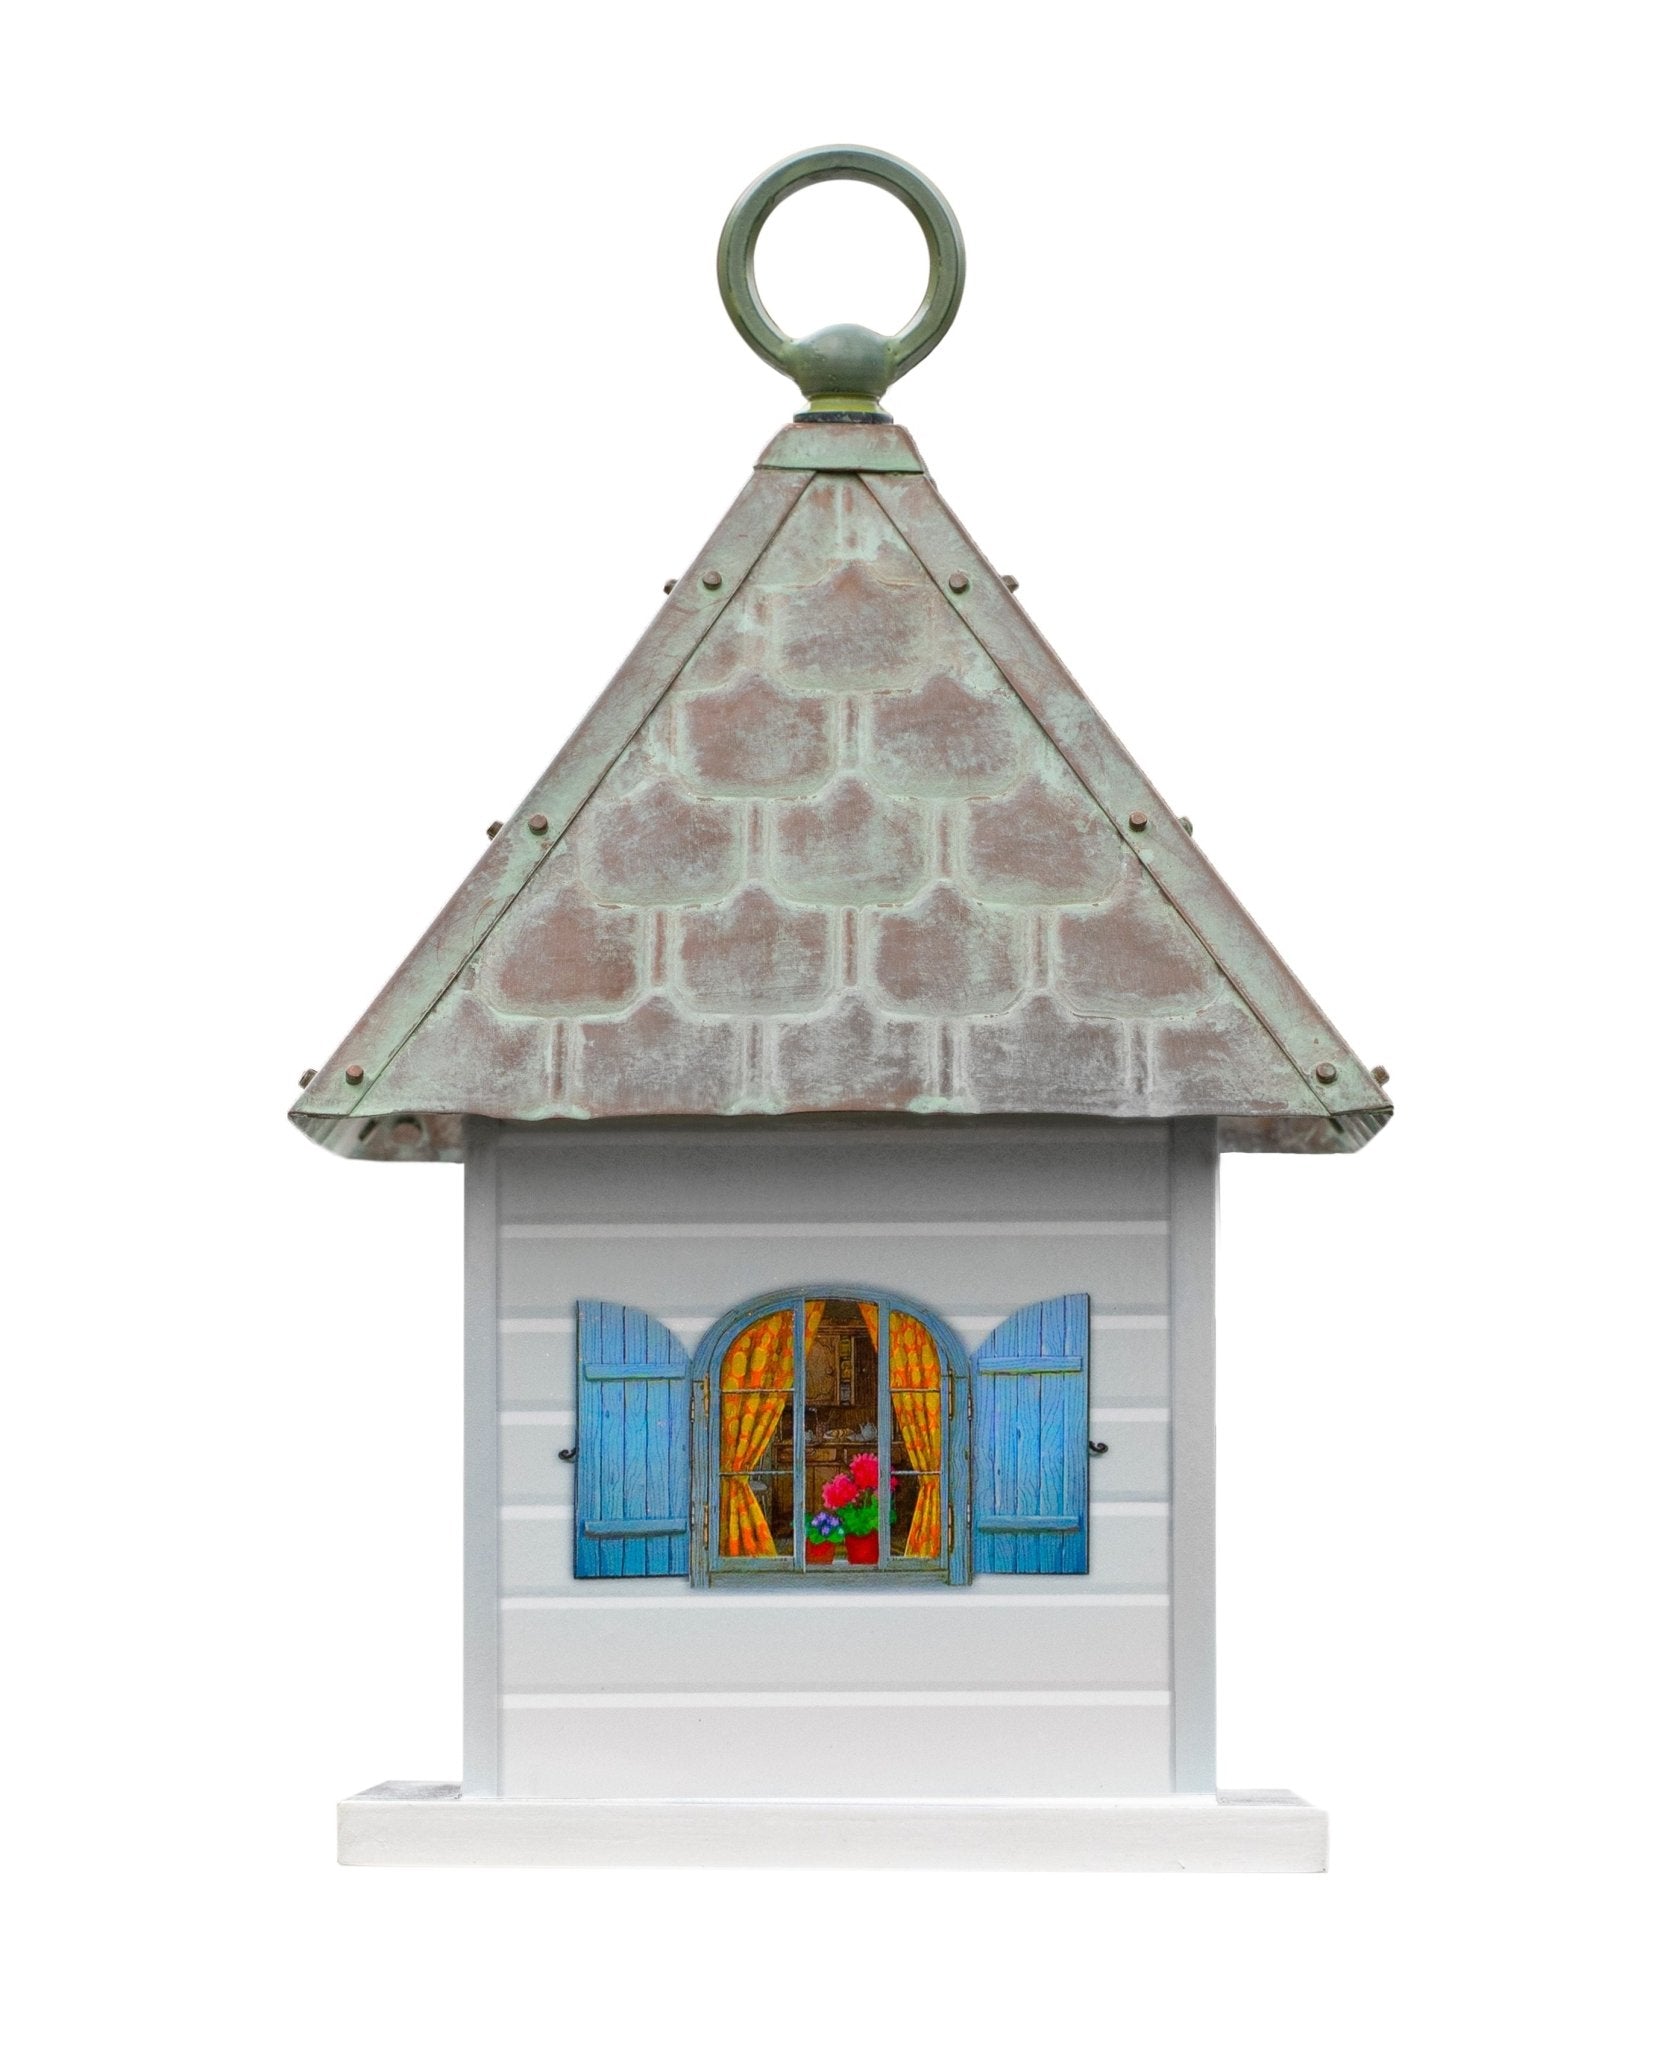 Simon's Bird House – Verdigris Roof - Good Directions